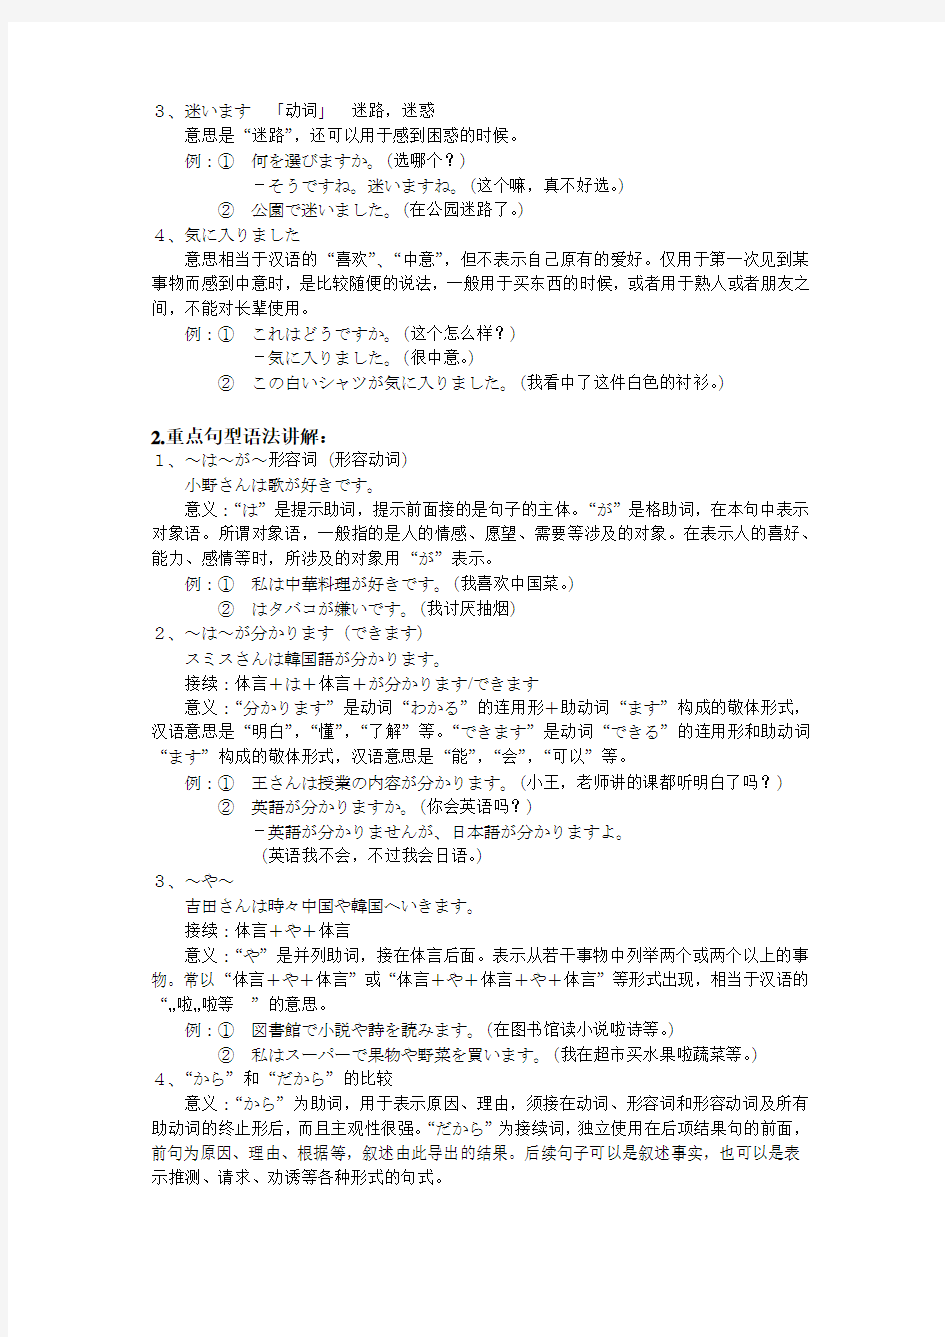 同等学力日语基础课程(11-15)